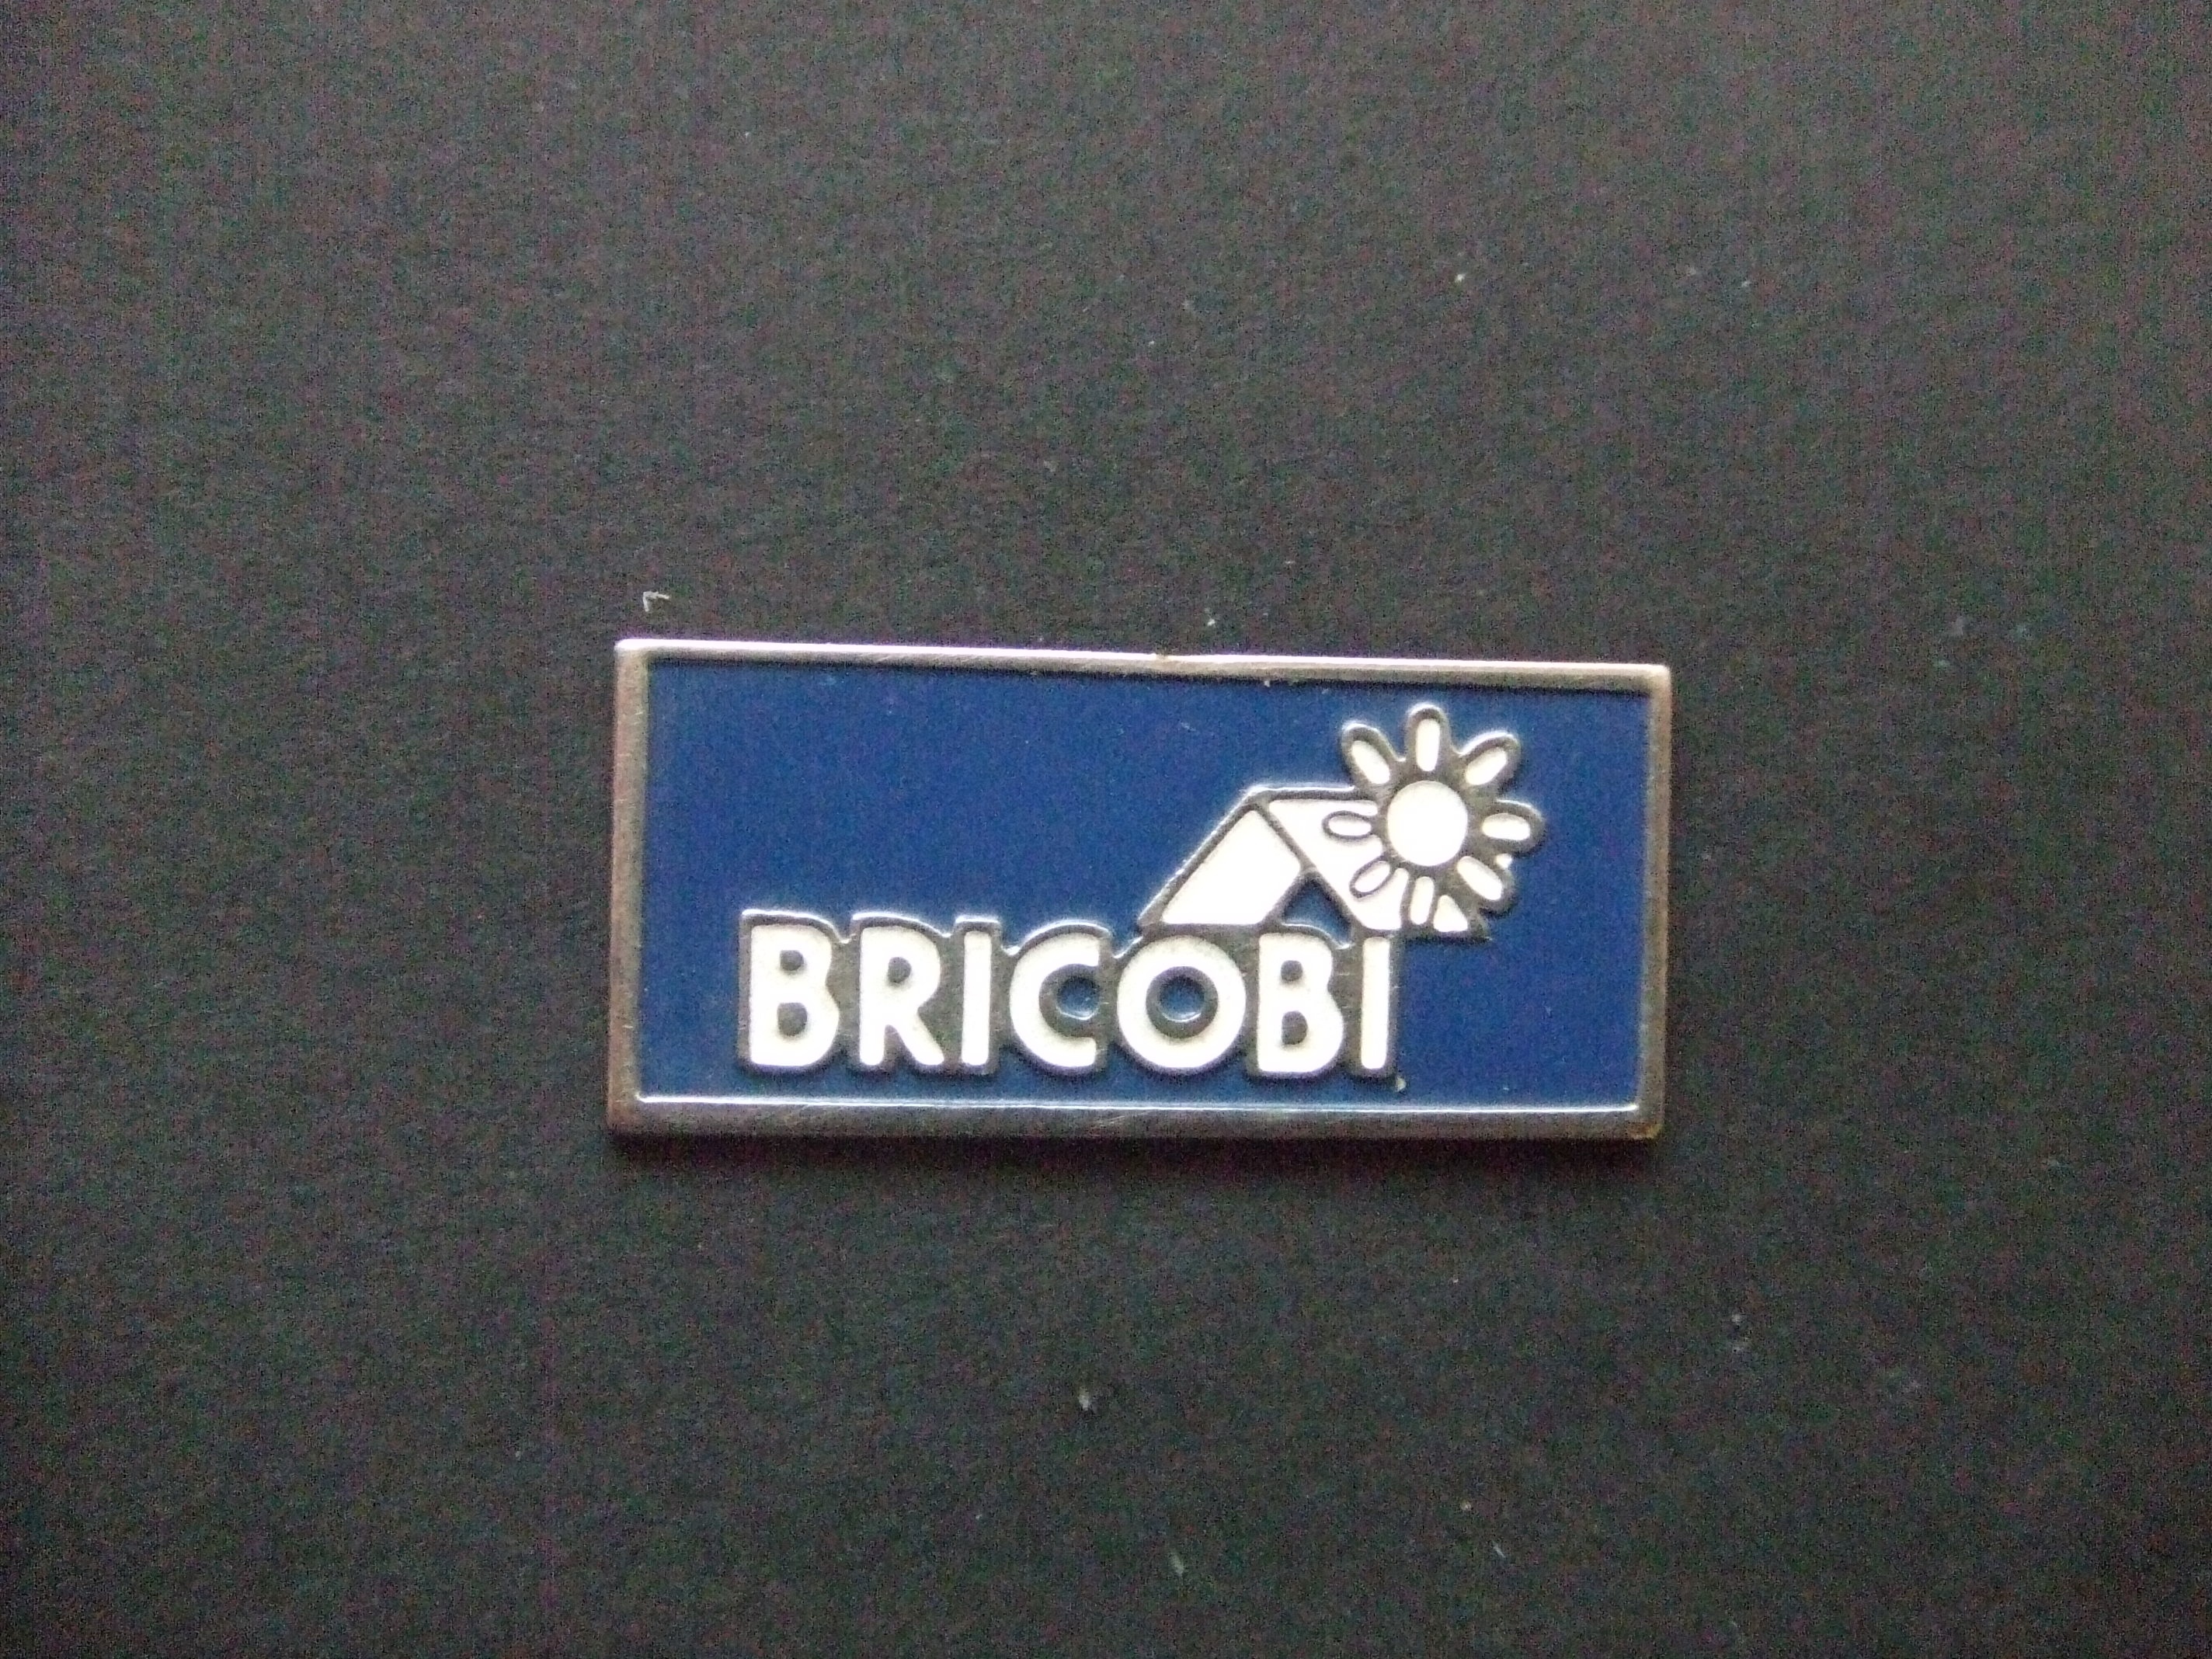 Bricobi bouwmarkt België logo